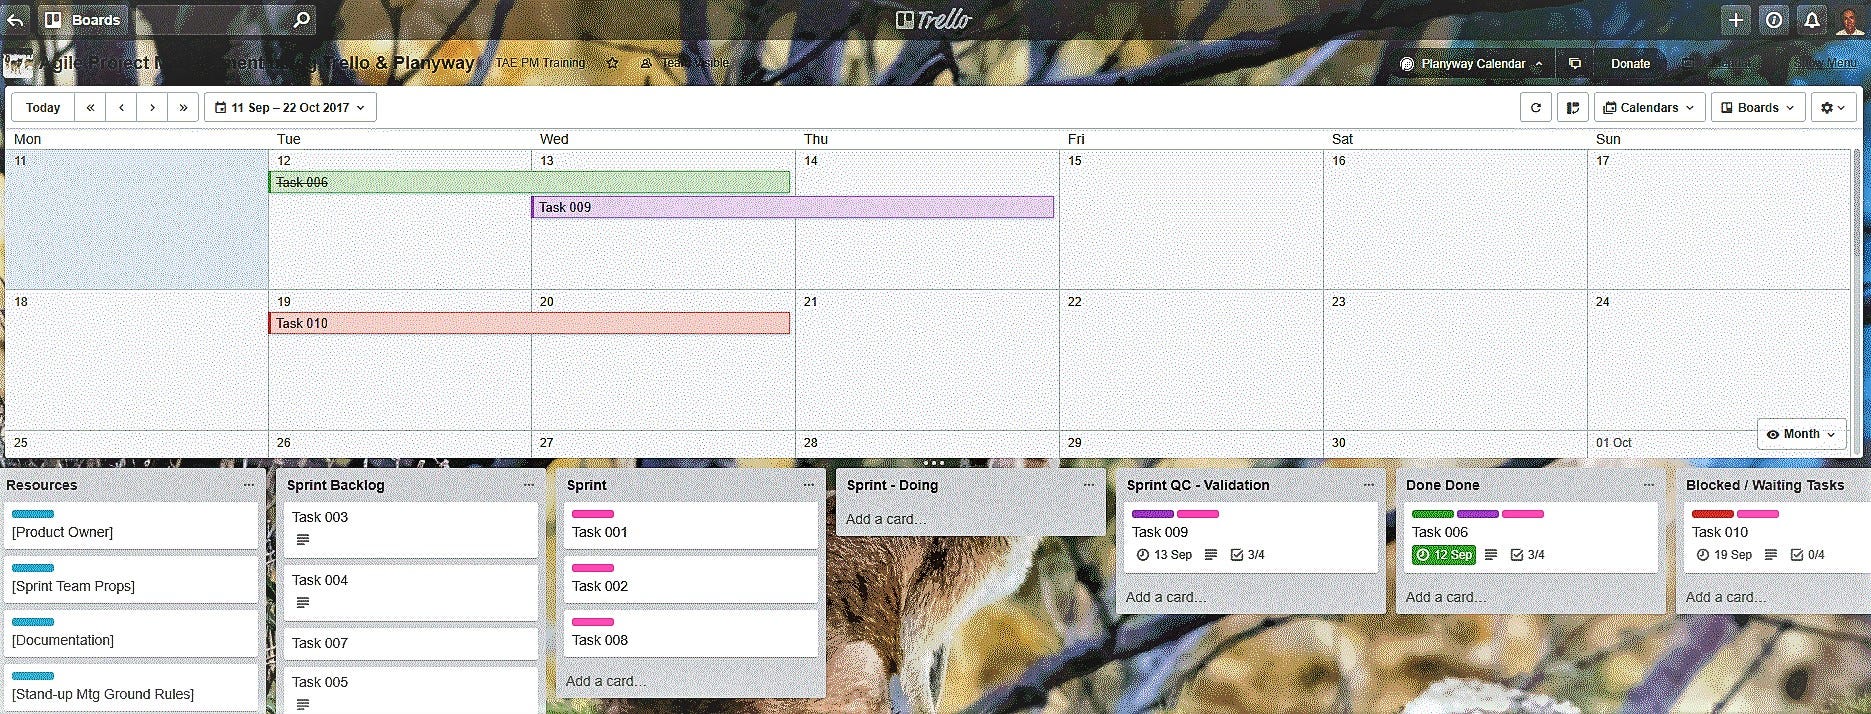 Planyway Calendar for Trello